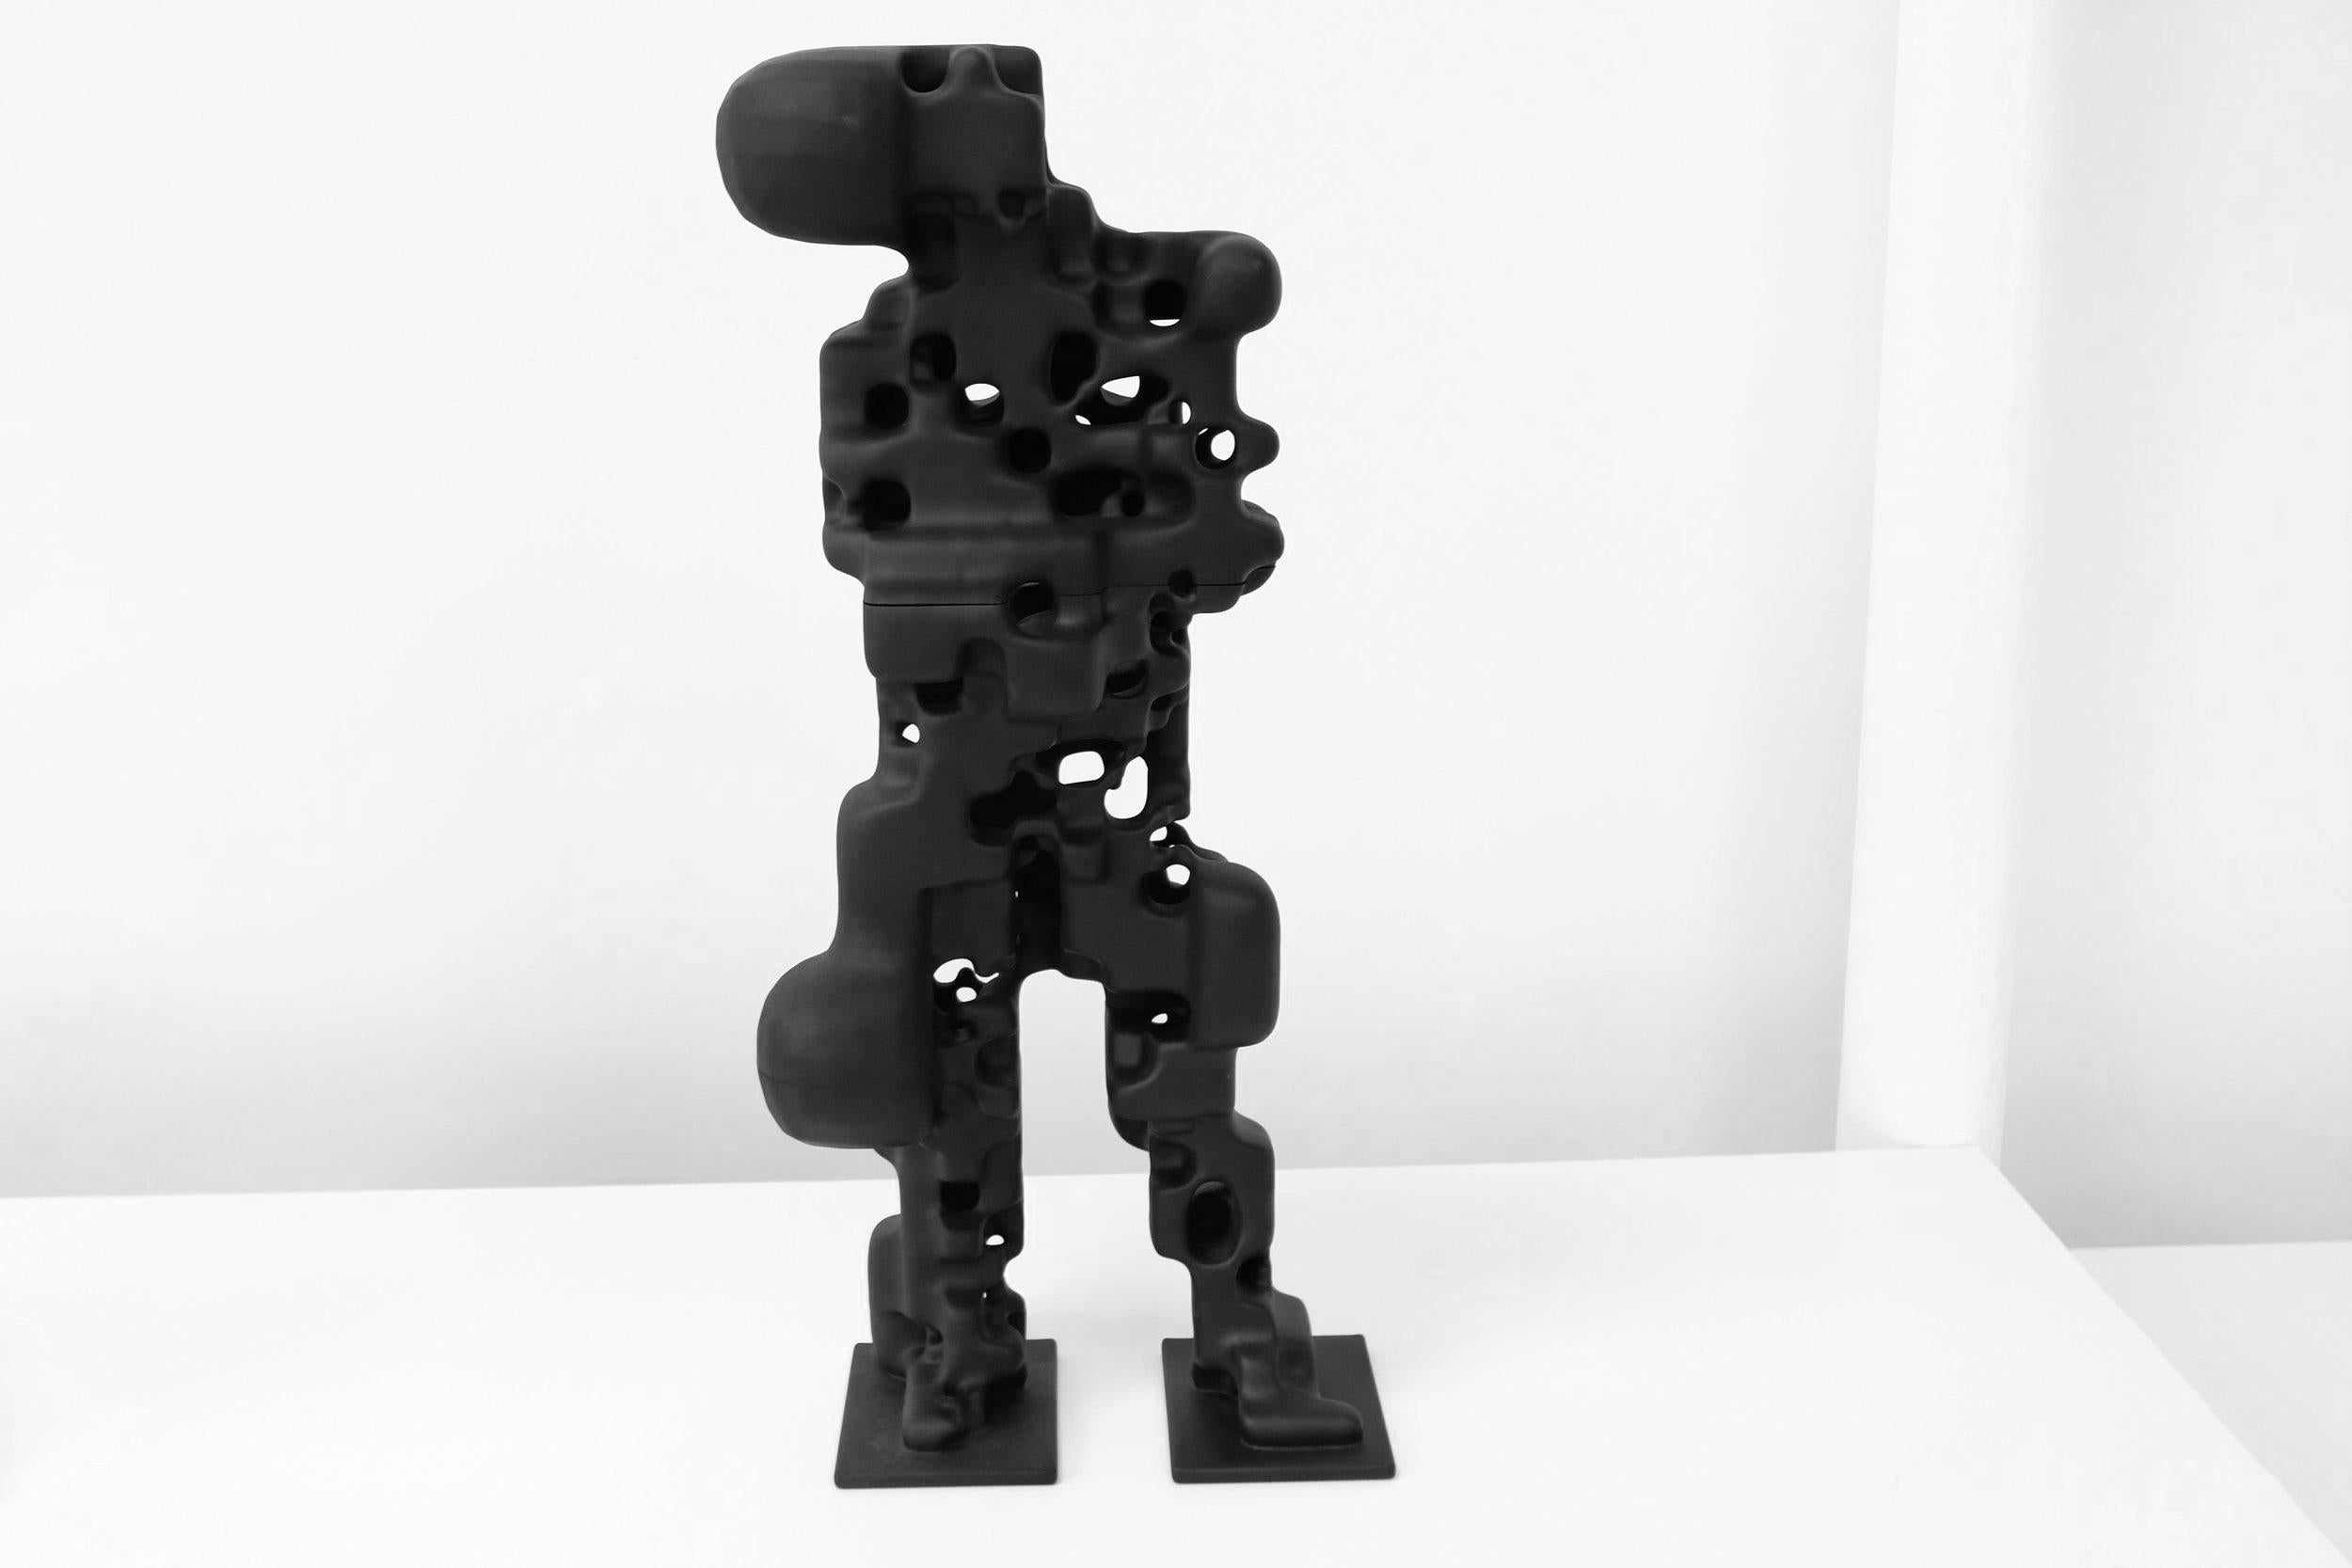 Cette sculpture humanoïde a d'abord été créée numériquement en réalisant un scan 3D d'un sujet humain debout par photogrammétrie, puis en faisant passer le scan par des algorithmes génératifs. Elle a ensuite été fabriquée avec du Nylon PA 12 recyclé